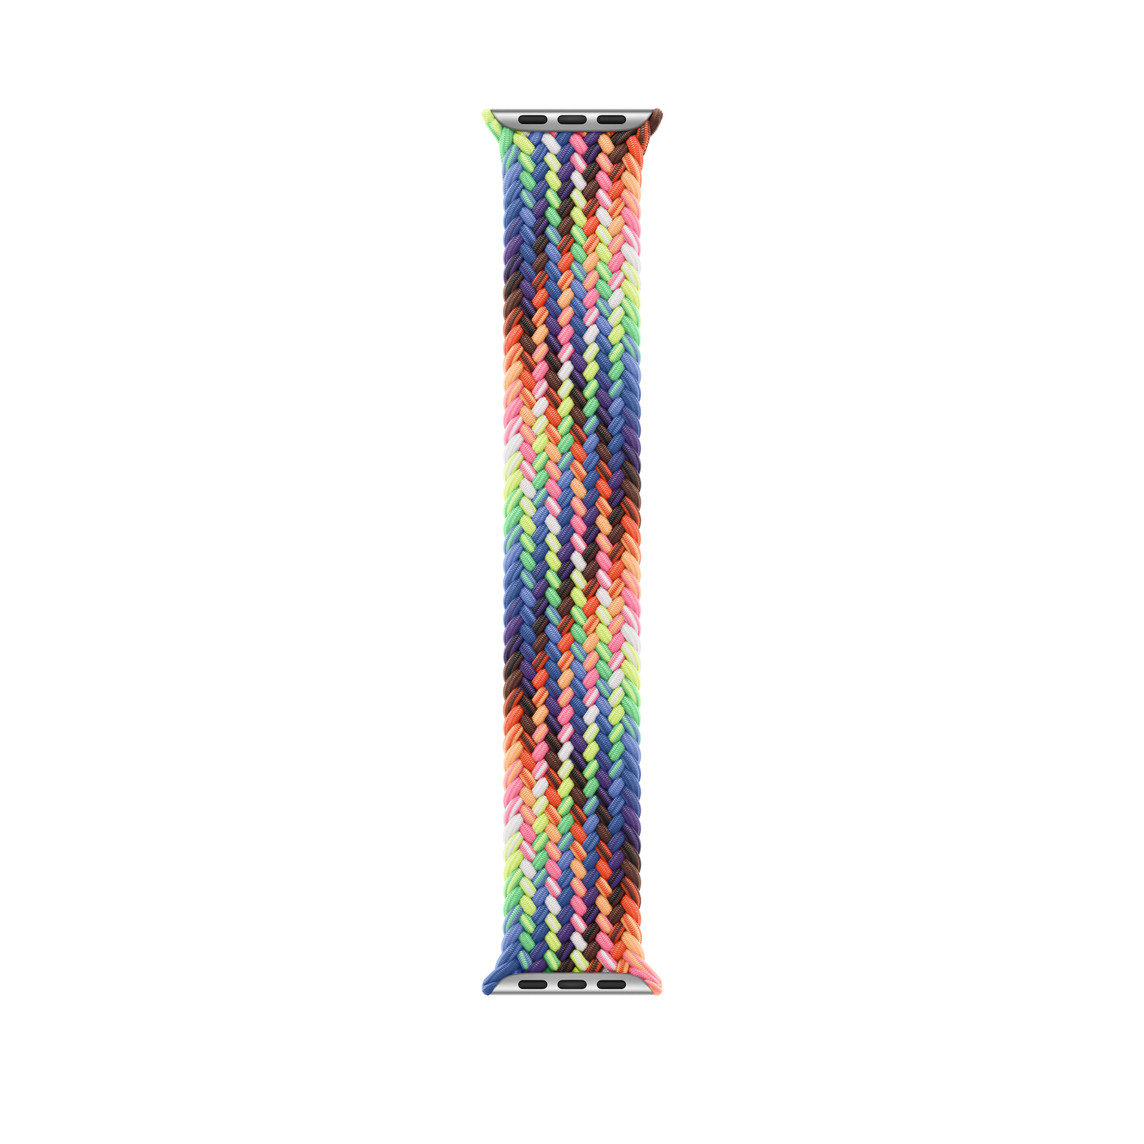 Pride Edition gevlochten solobandje in neonkleuren die zijn geïnspireerd op de levendige regenboogkleuren van de Pride-vlag, zonder sluiting of gesp